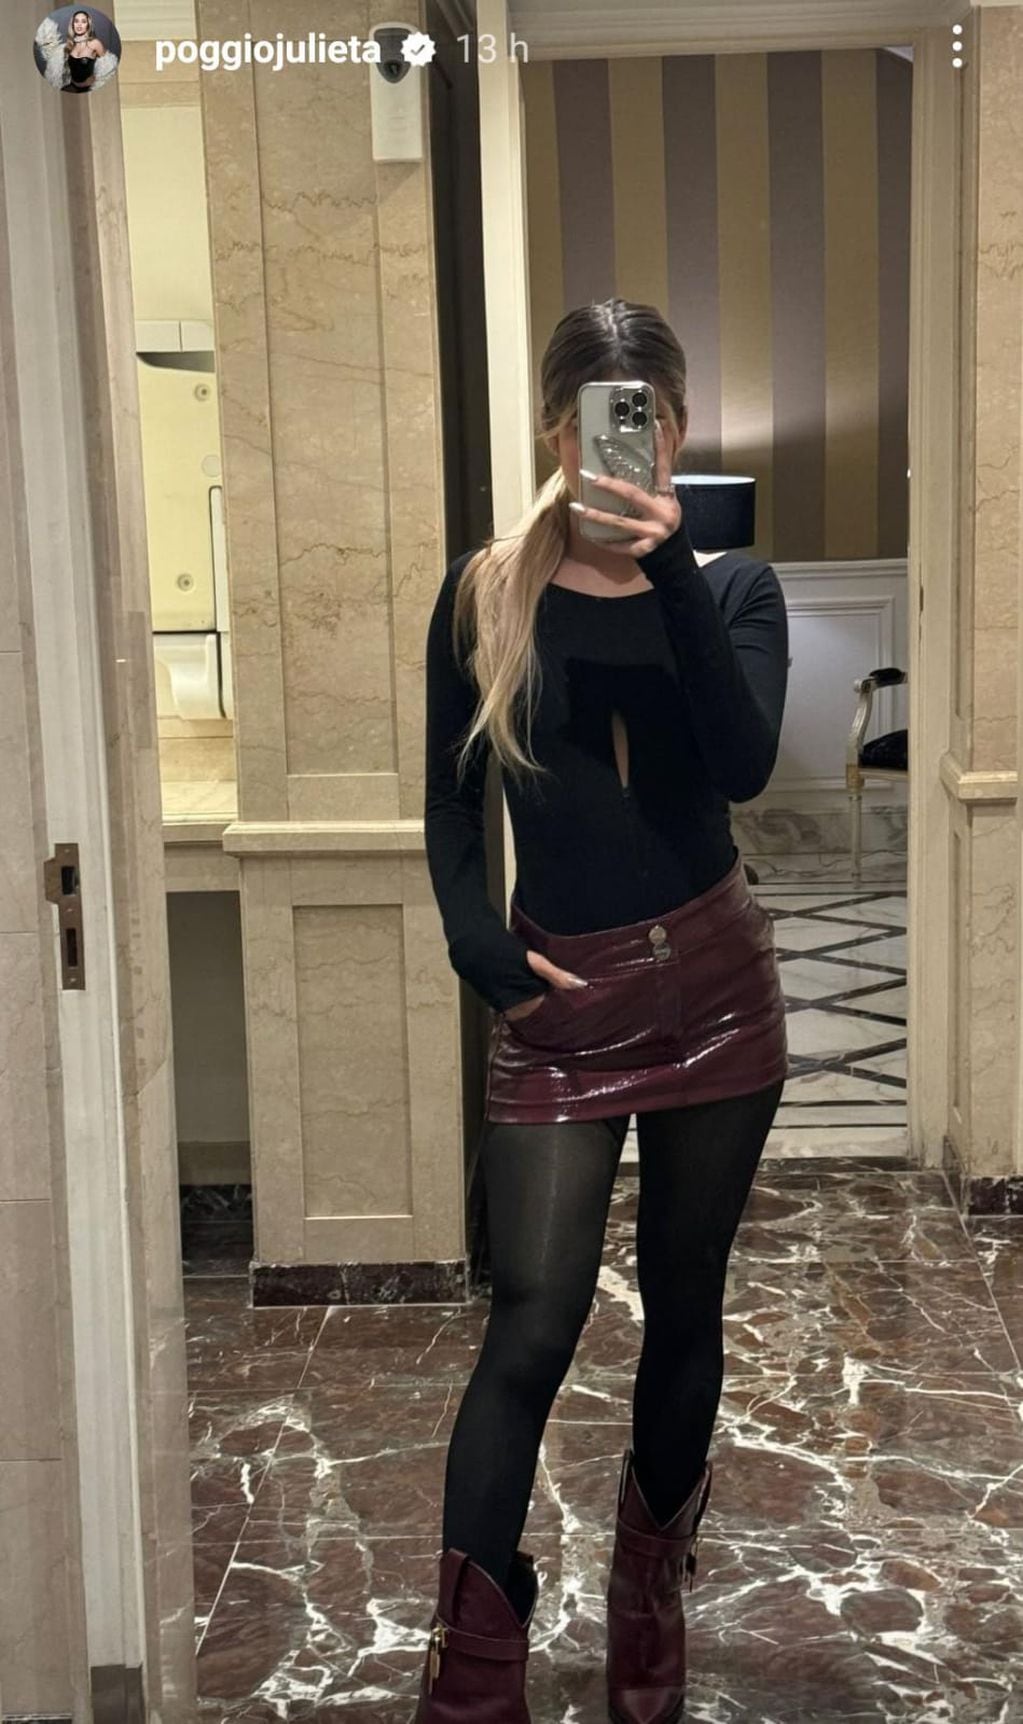 Transparencias y minifalda: Julieta Poggio subió la temperatura del invierno con un espectacular outfit